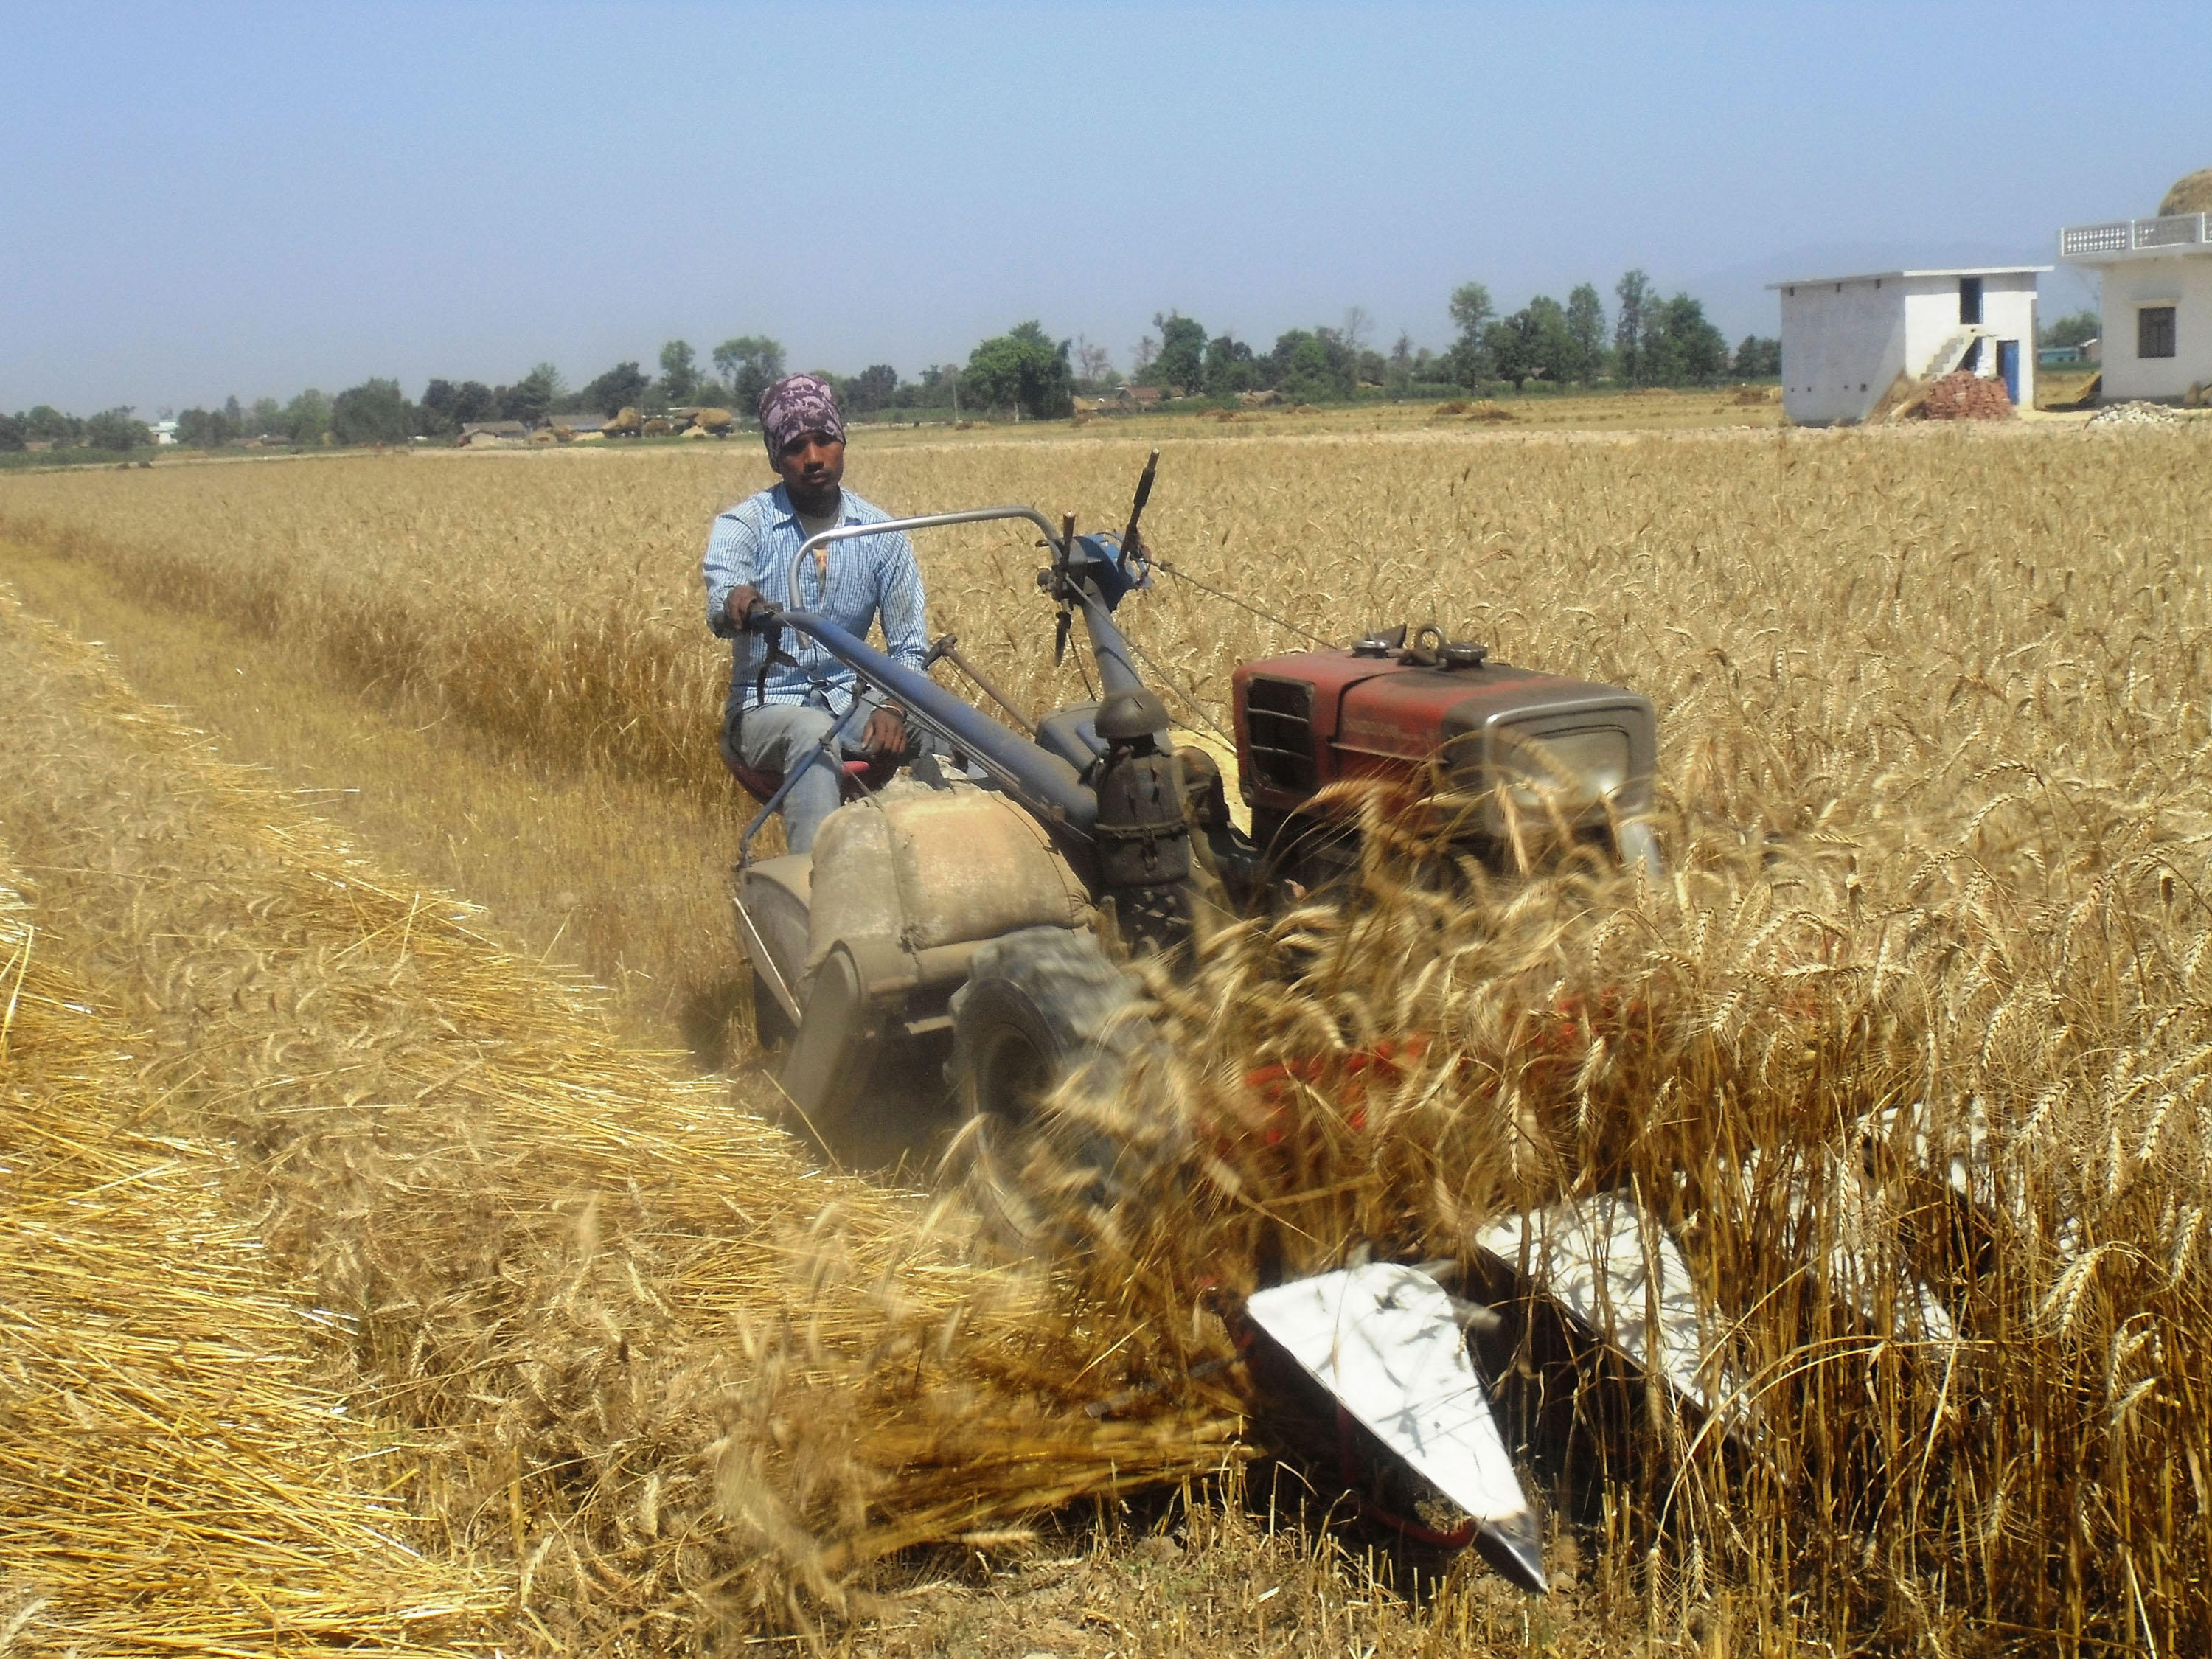 कञ्चनपुरका किसान खेतमा गहुँ काट्न आधुनिक यन्त्रको प्रयोग गर्दै । तस्वीर : रासस